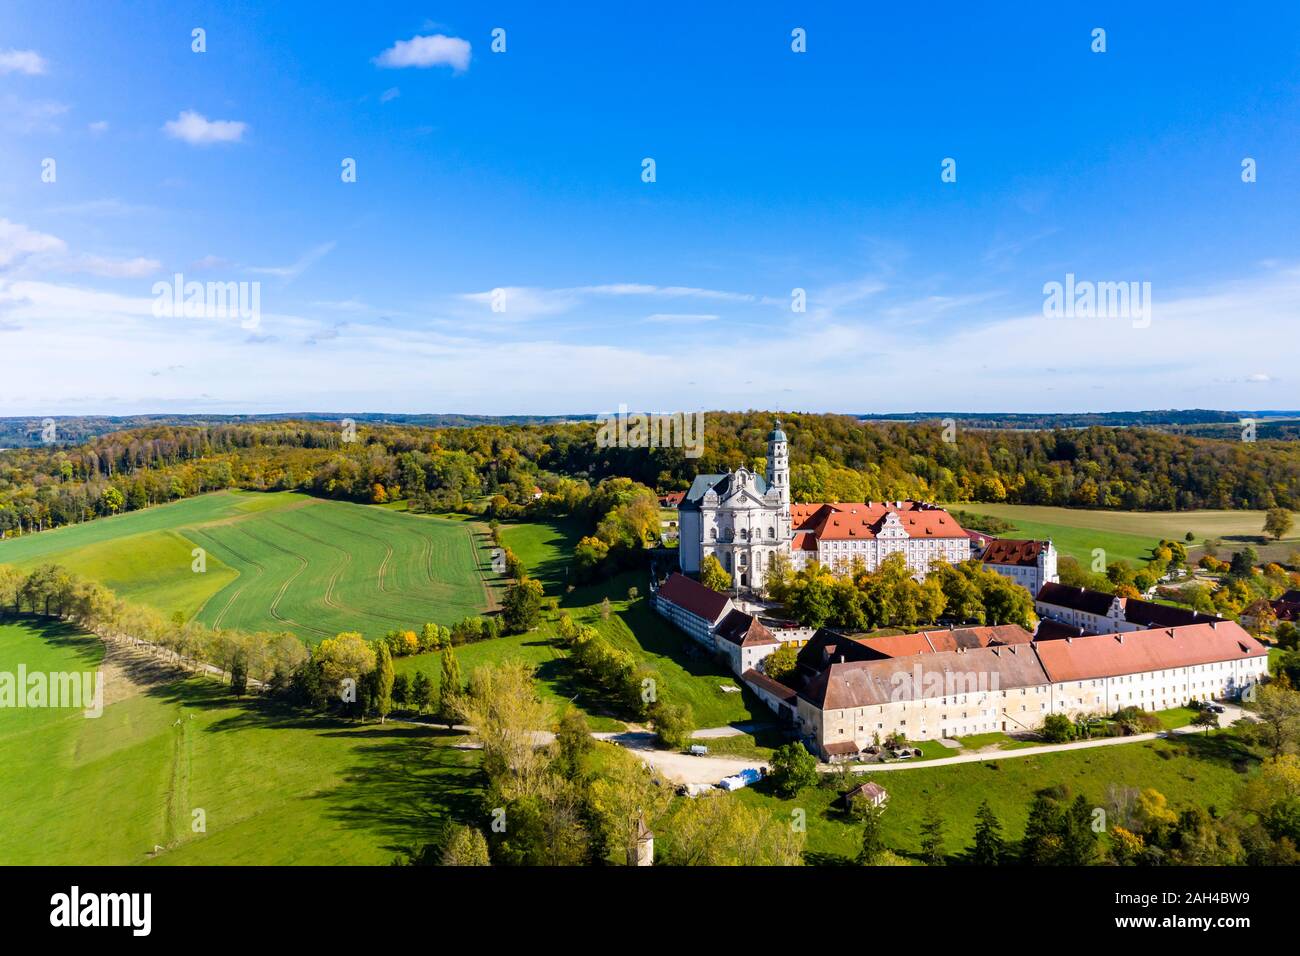 Germany, Baden-Wuerttemberg, Neresheim, Aerial view of Benedictine Monastery, Neresheim Abbey Stock Photo